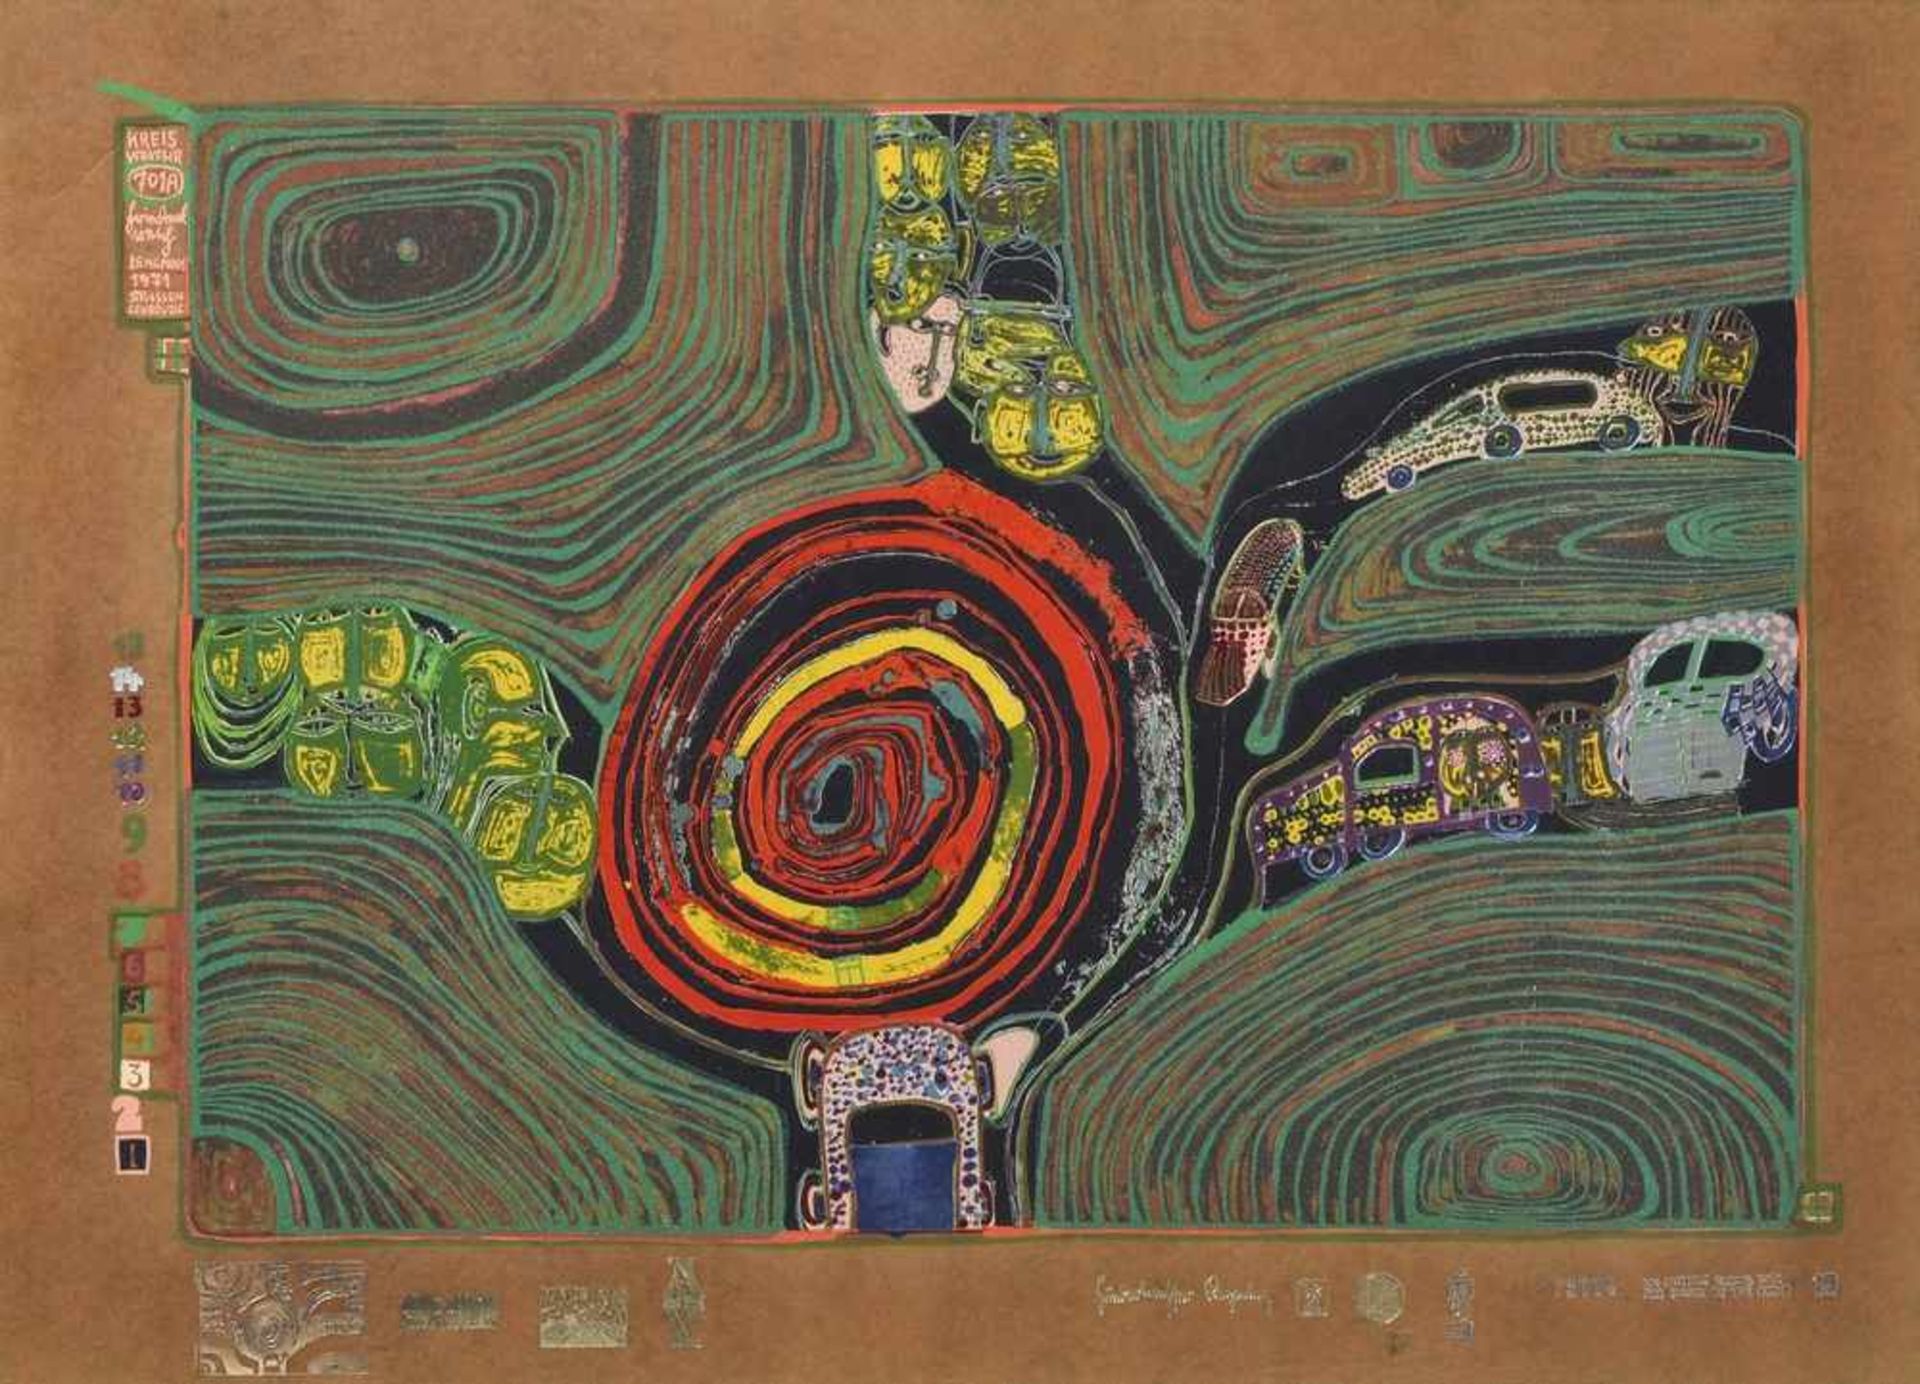 Hunderwasser, Friedensreich (1928-2000) "Kreisverkehr" aus "Regentag" Mappe, Auflage ?/3000, 47x65cm